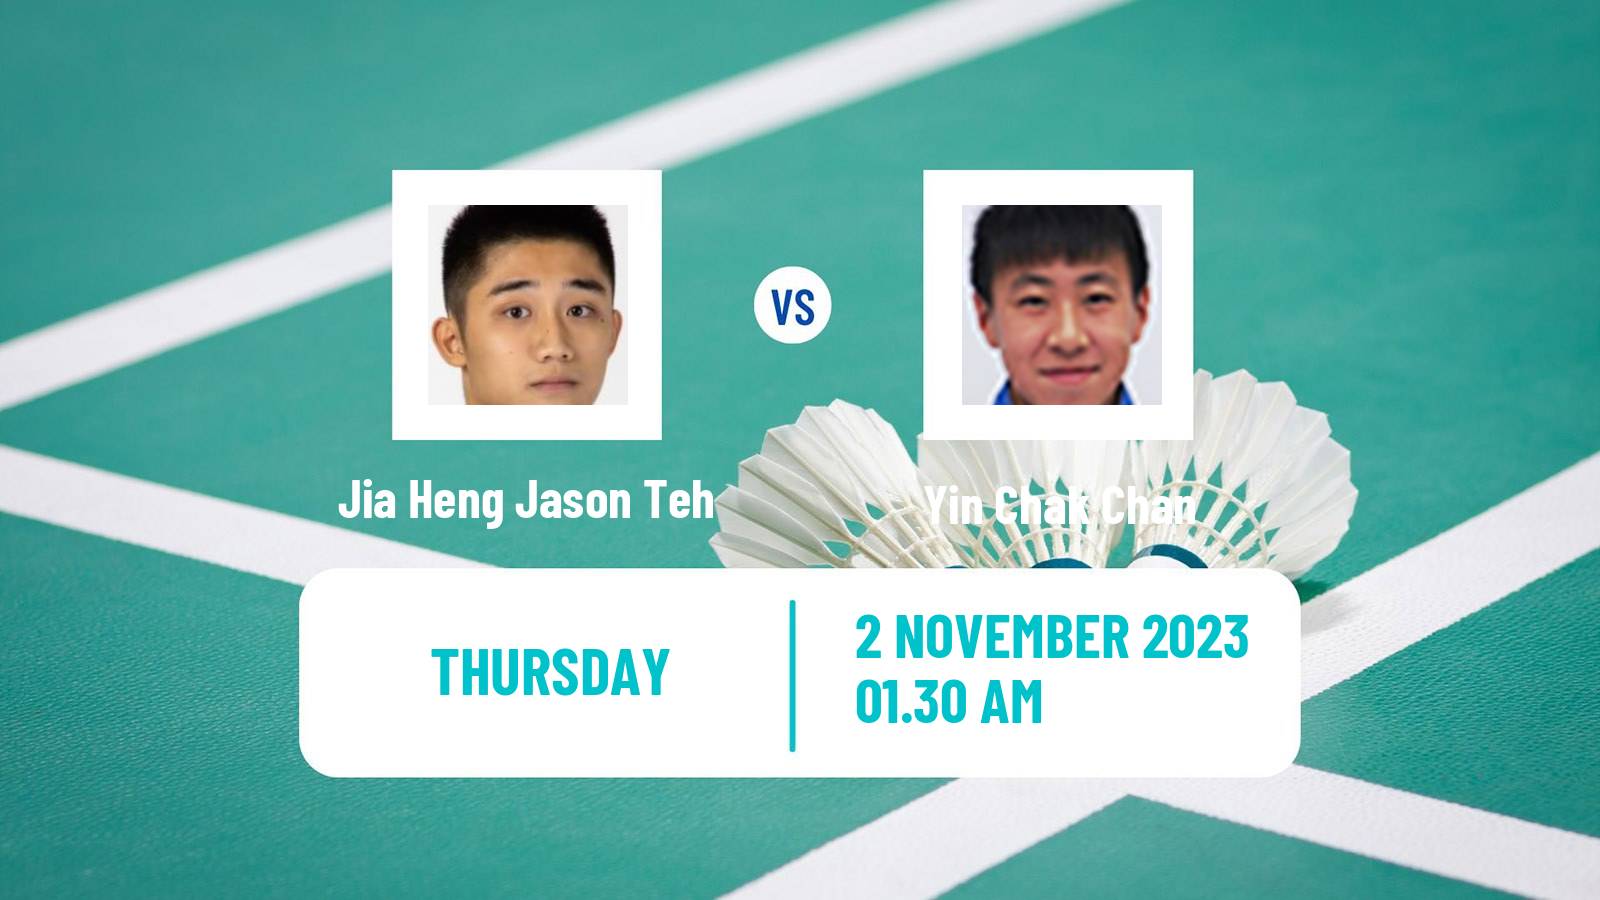 Badminton BWF World Tour Kl Masters Malaysia Super 100 Men Jia Heng Jason Teh - Yin Chak Chan